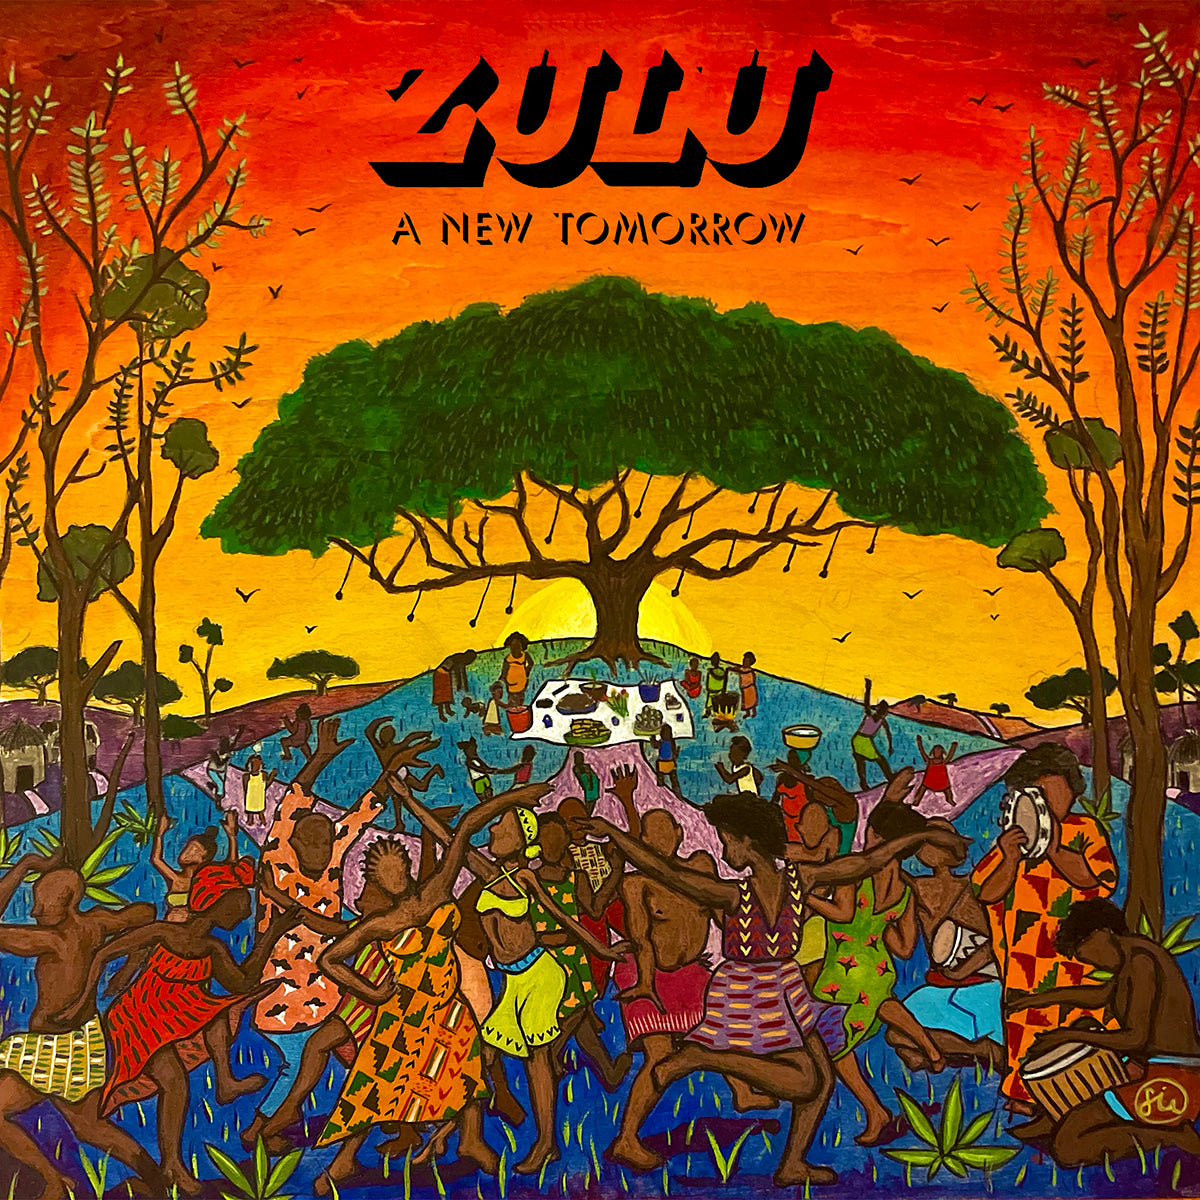 ZULU "A New Tomorrow" CD